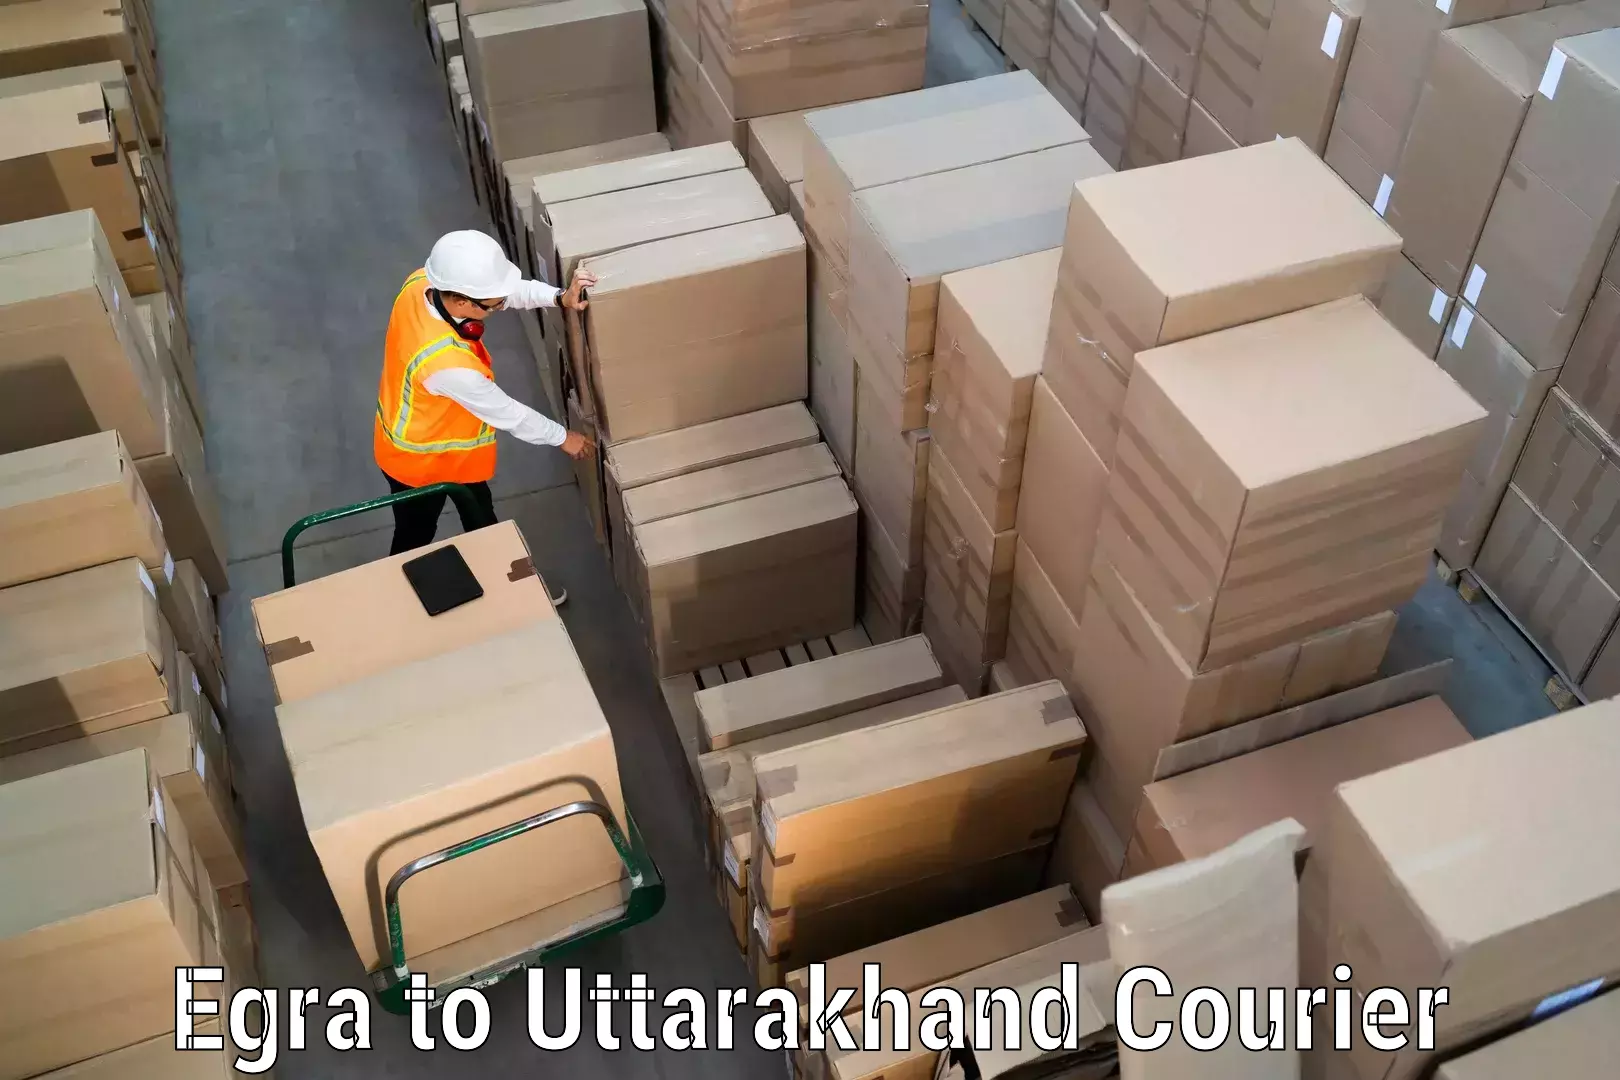 Pharmaceutical courier Egra to Uttarakhand